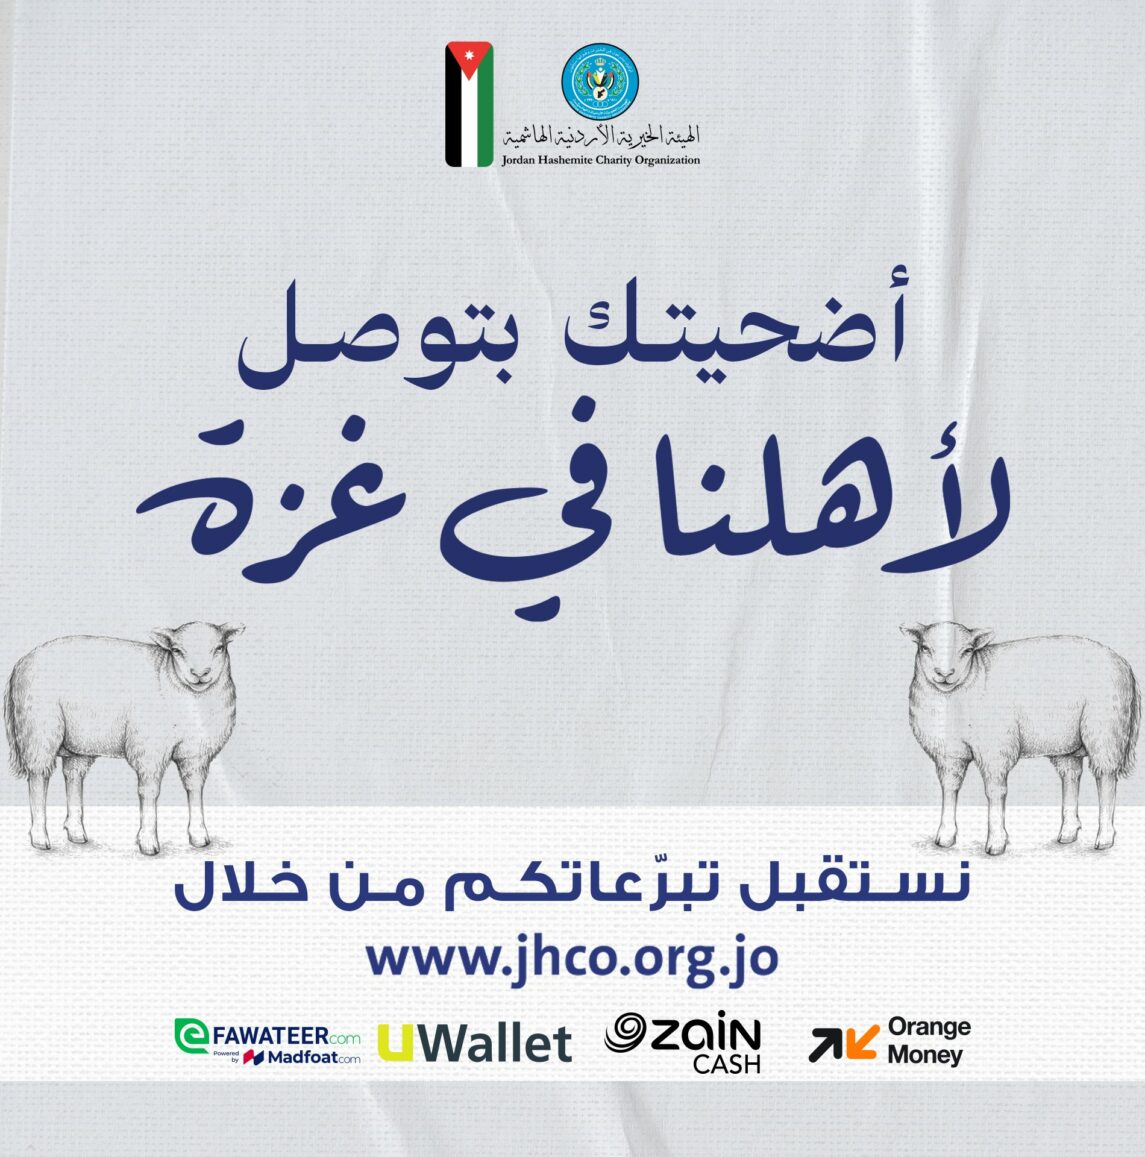 الهيئة الخيرية:ثمن الأضحية بالأردن 218 دينارا وبالخارج 148